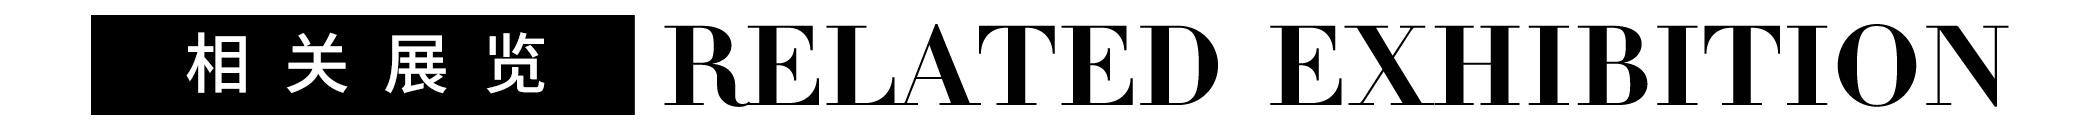 专题 | 艾德·米诺里提：接纳 博文精选 Antenna Space 艾德 米诺里提 专题 后文 米诺 水母之源 策展 人和 艺术家 名称 崇真艺客